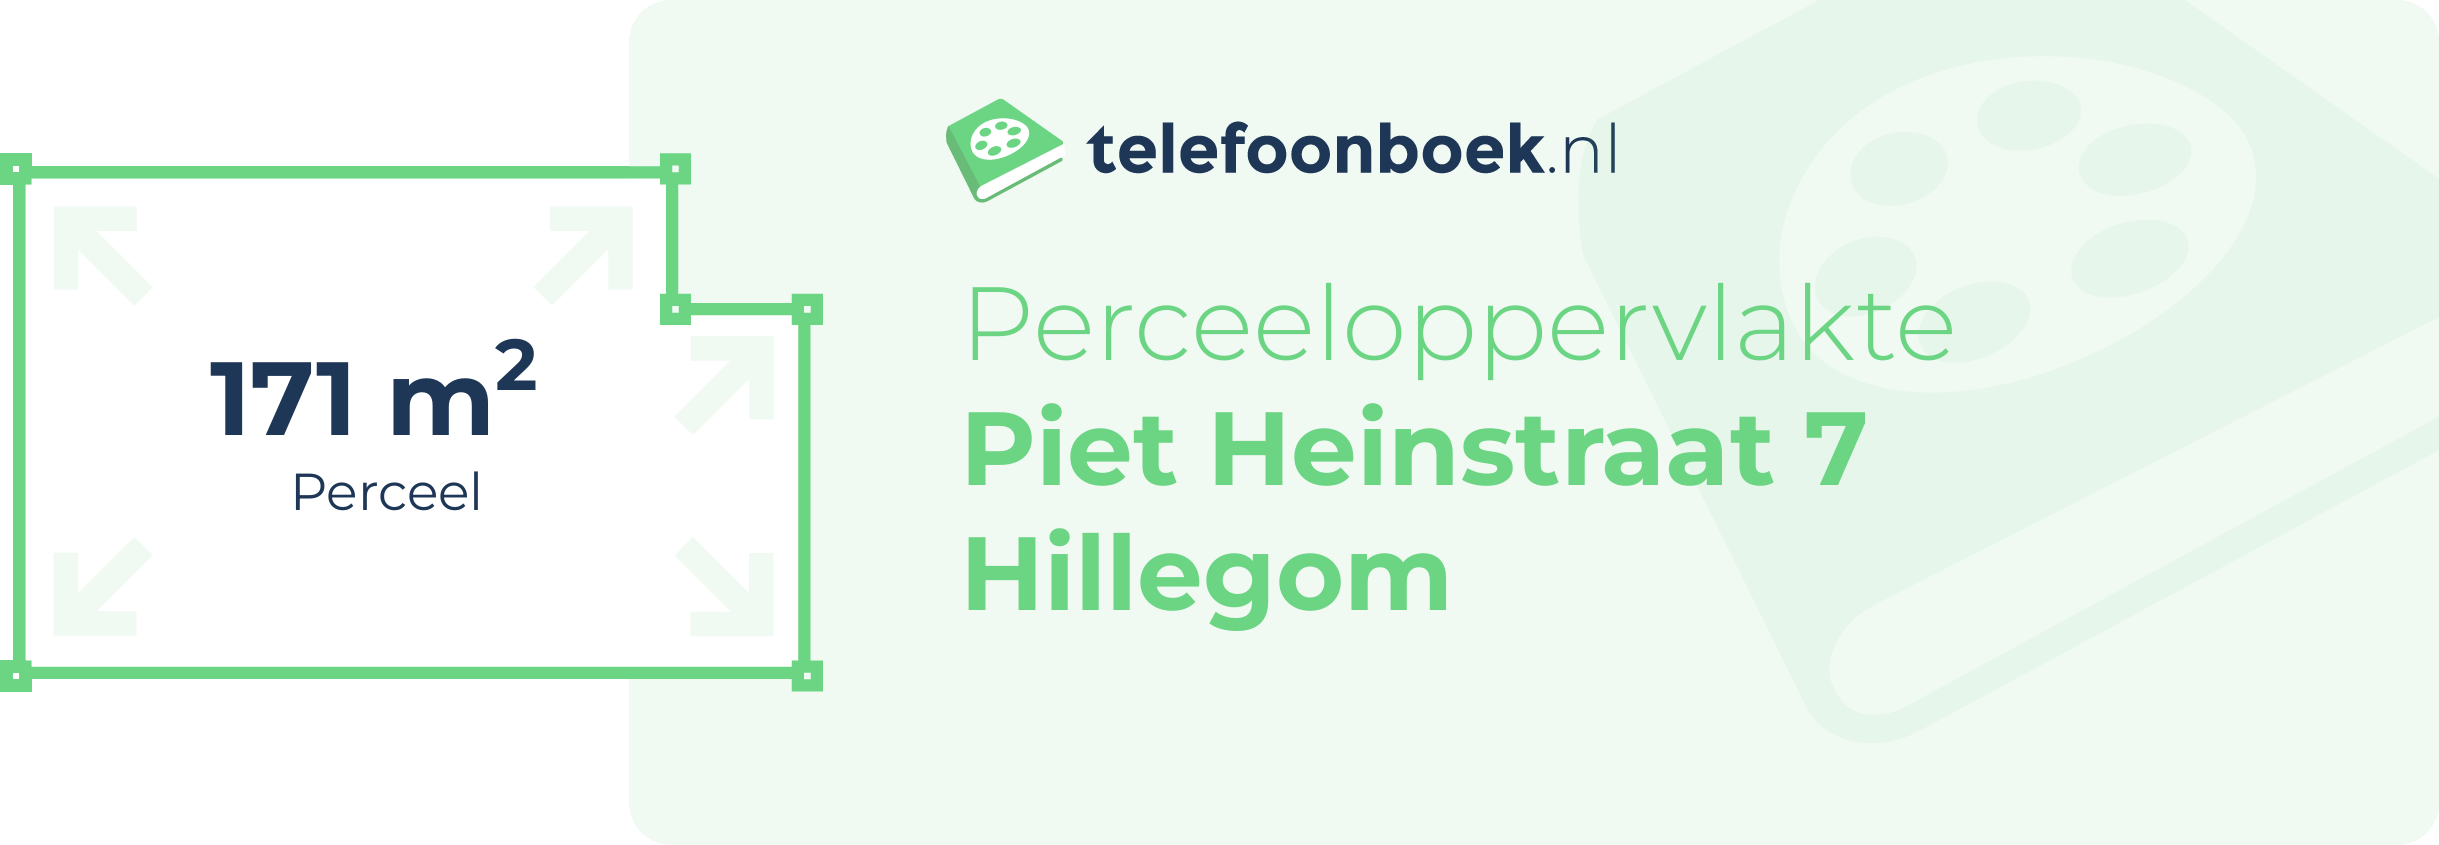 Perceeloppervlakte Piet Heinstraat 7 Hillegom